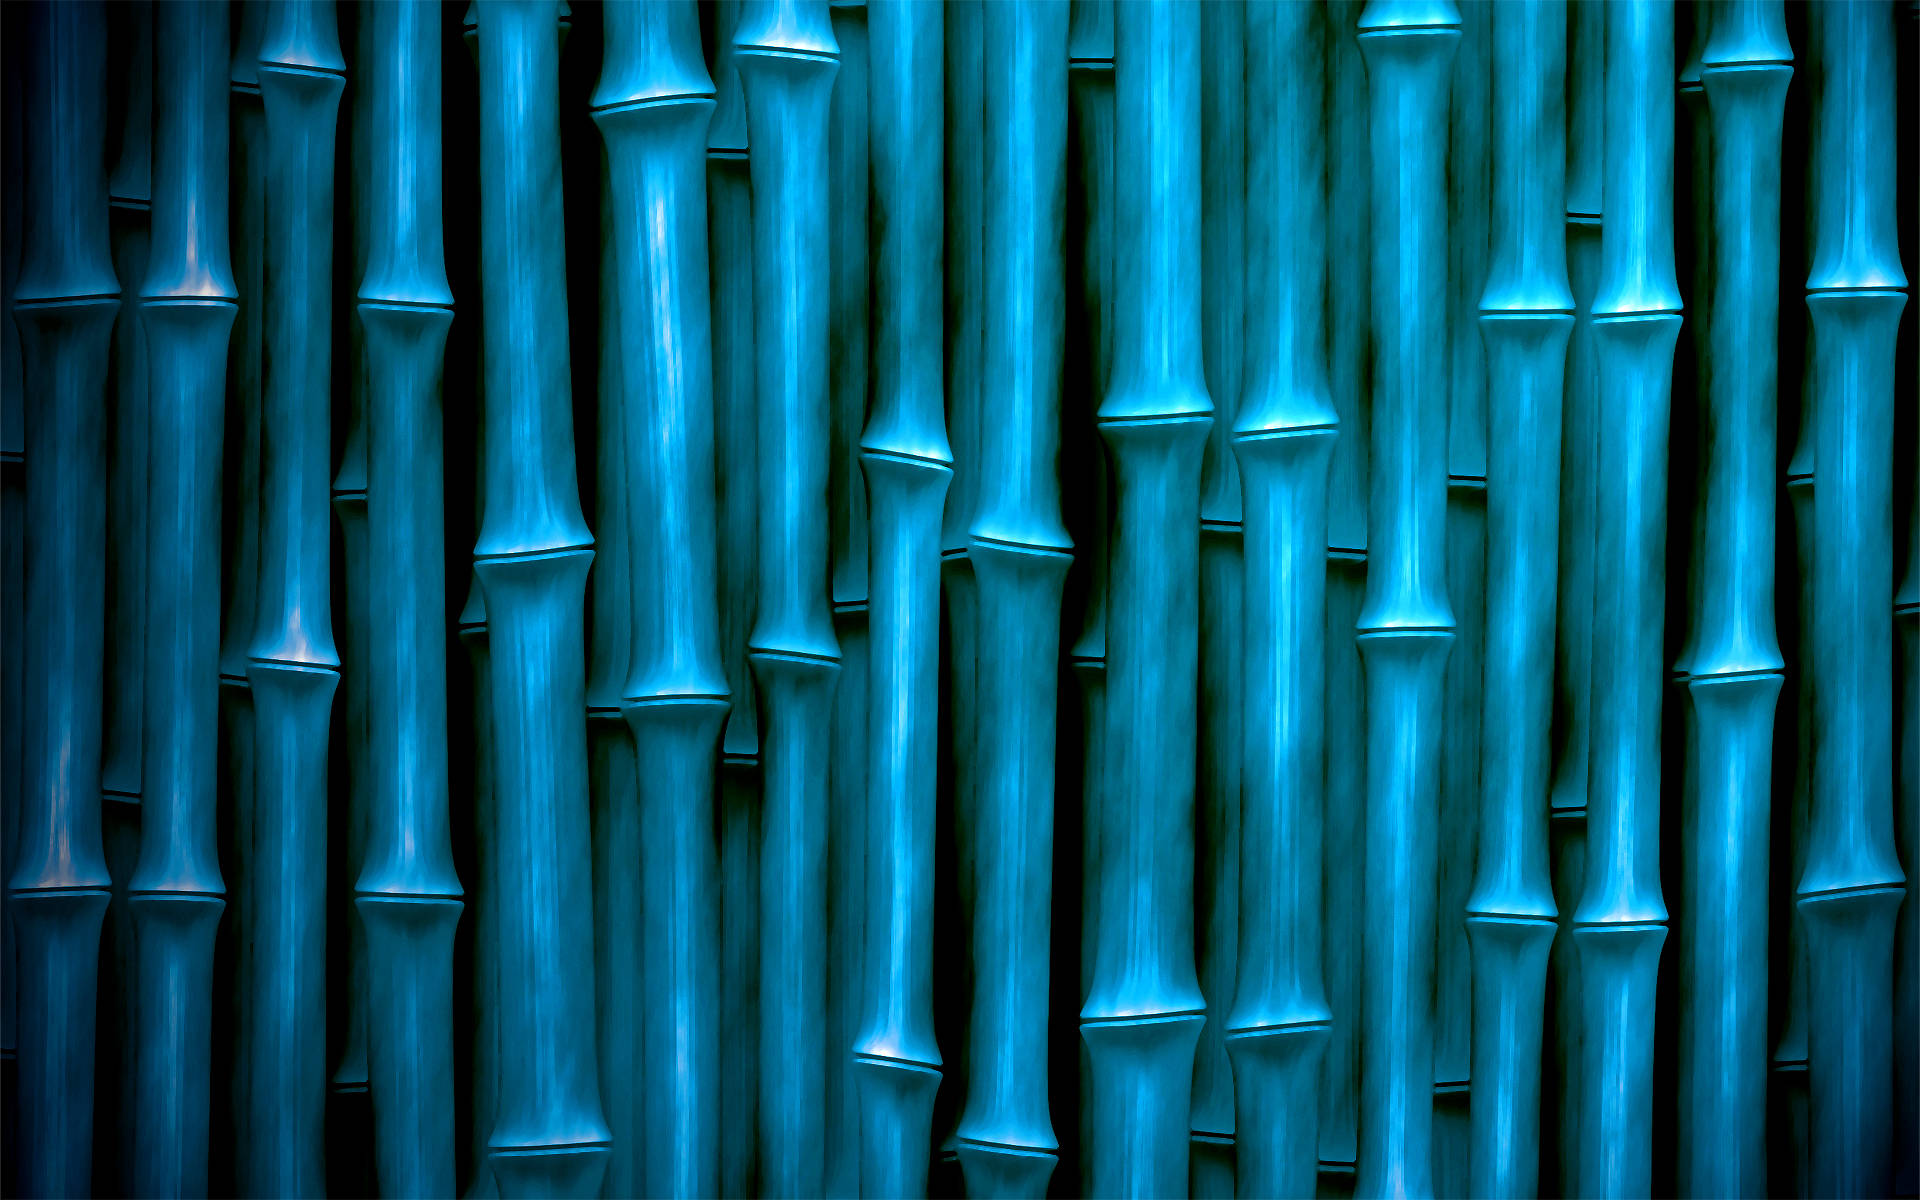 Bambúcon Tonalidad Azul En Alta Definición. Fondo de pantalla